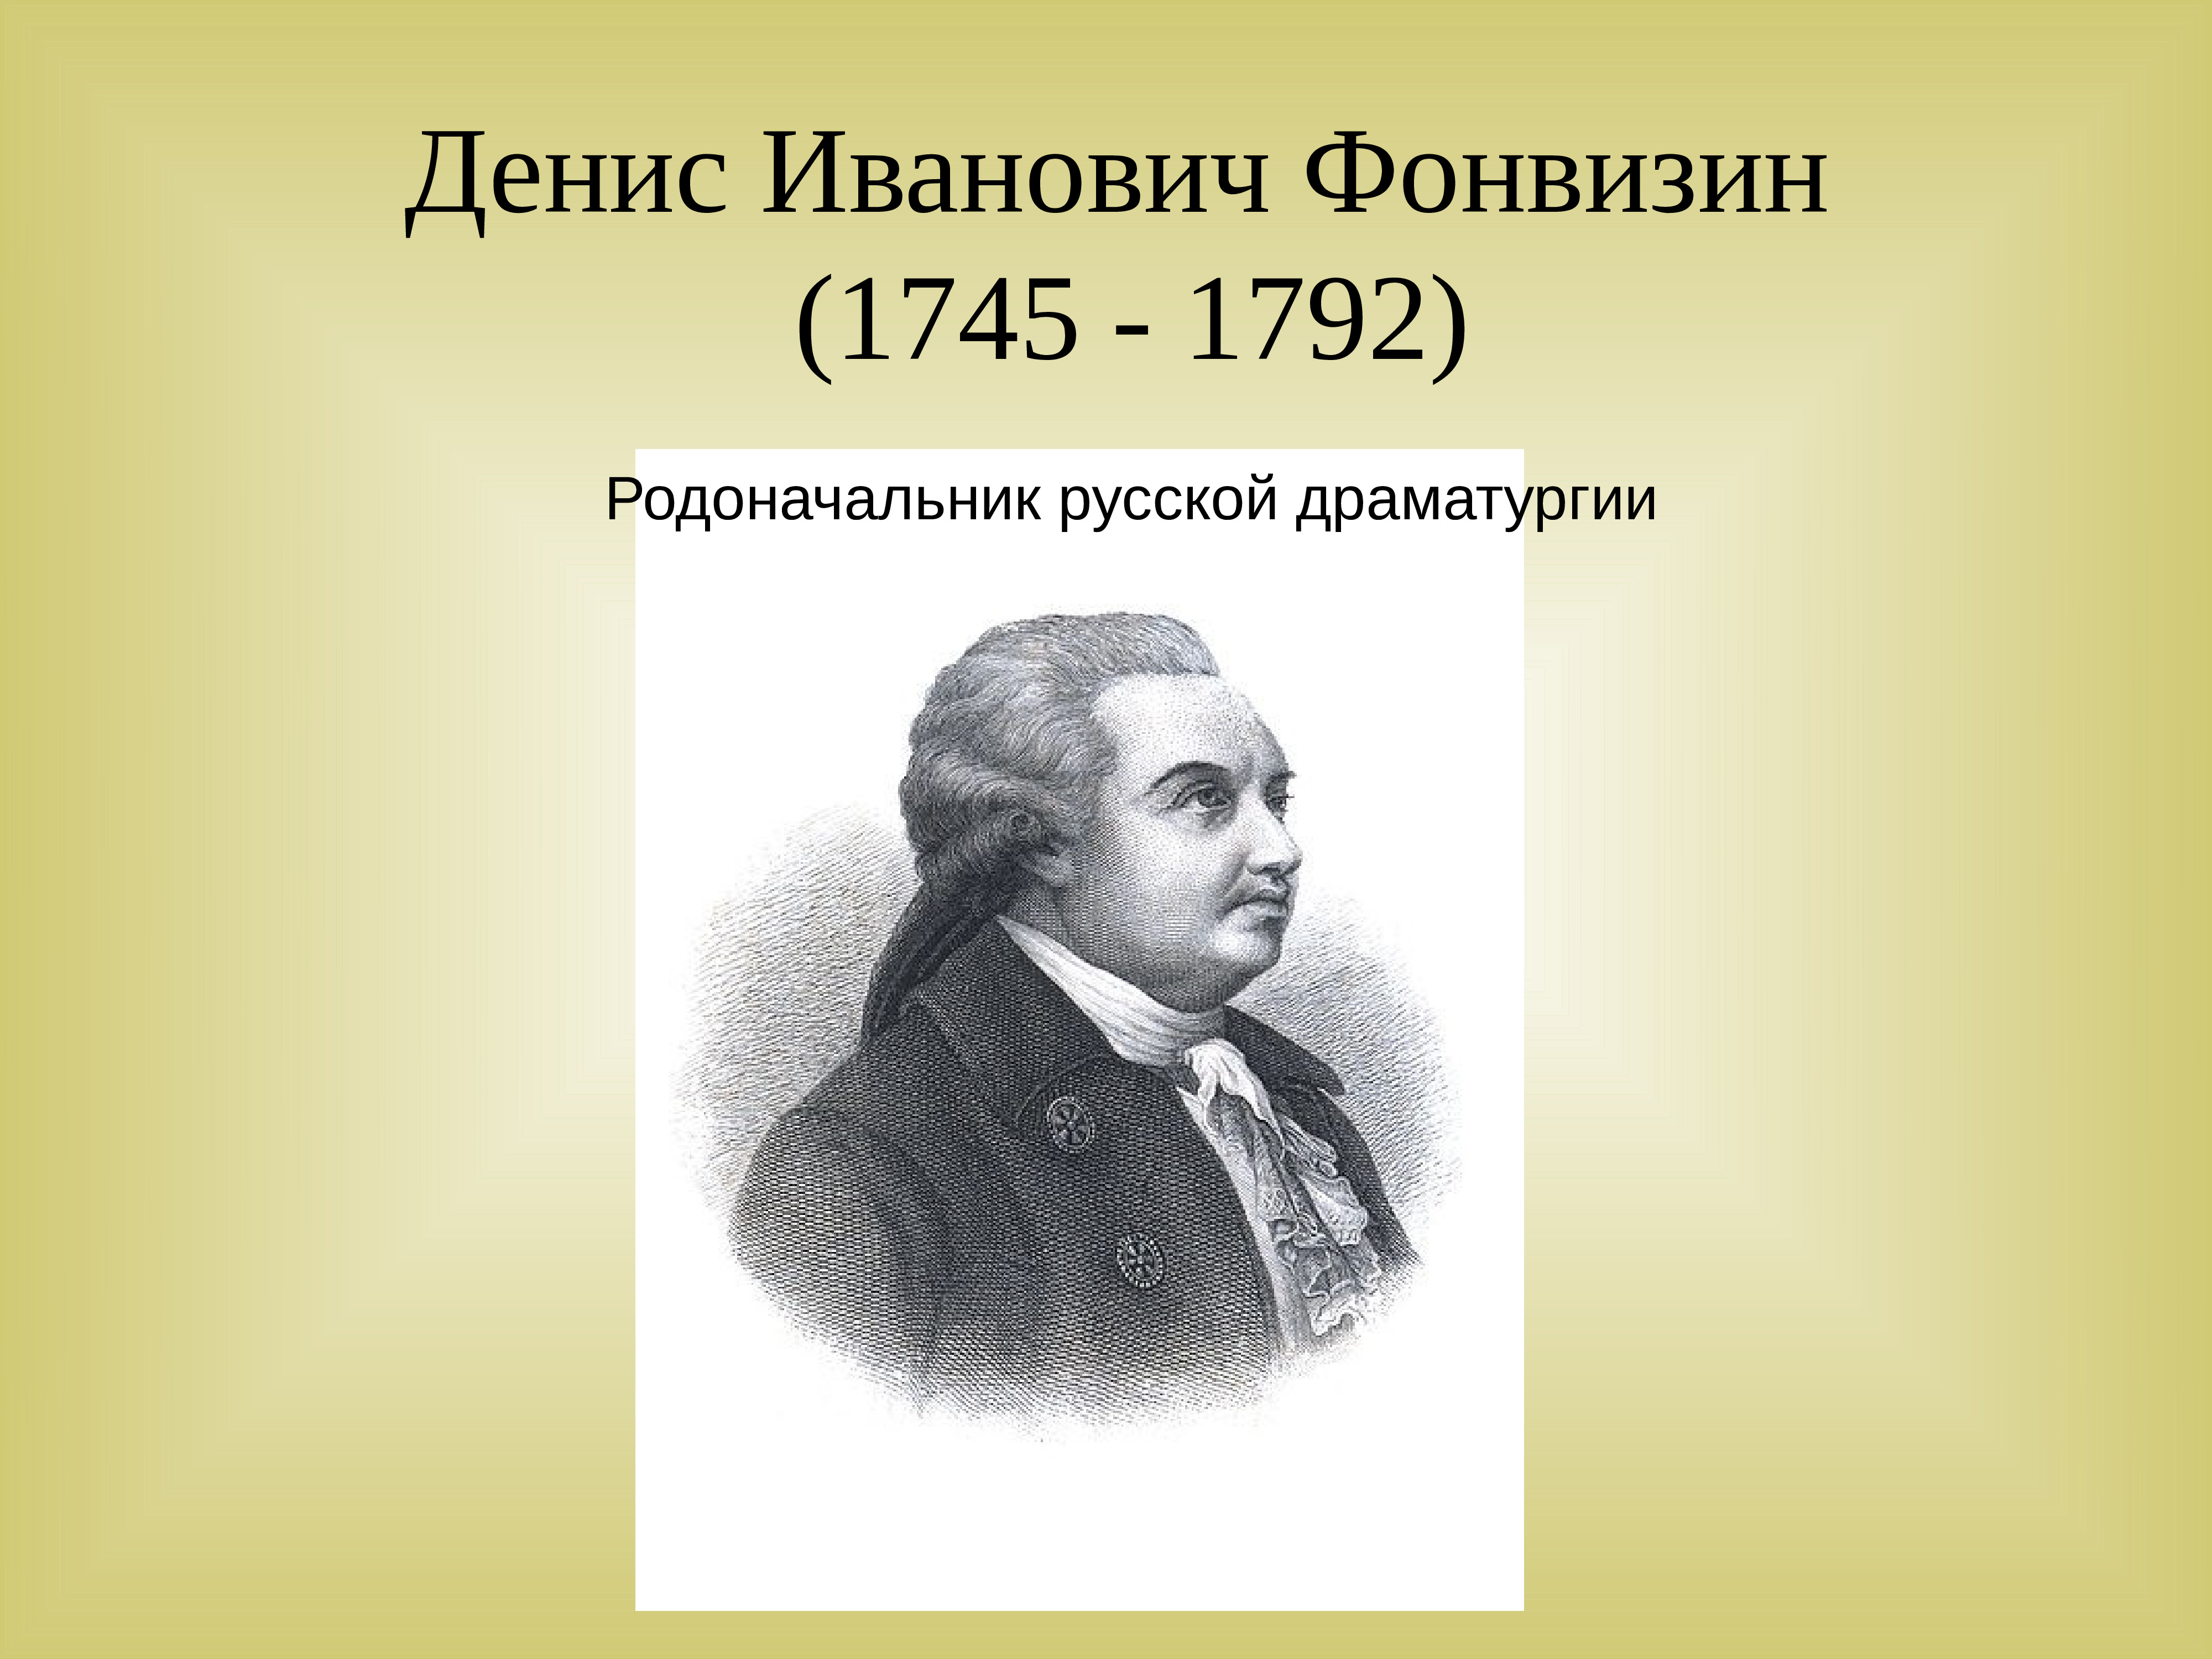 Денис Иванович Фонвизин (1745-1792)